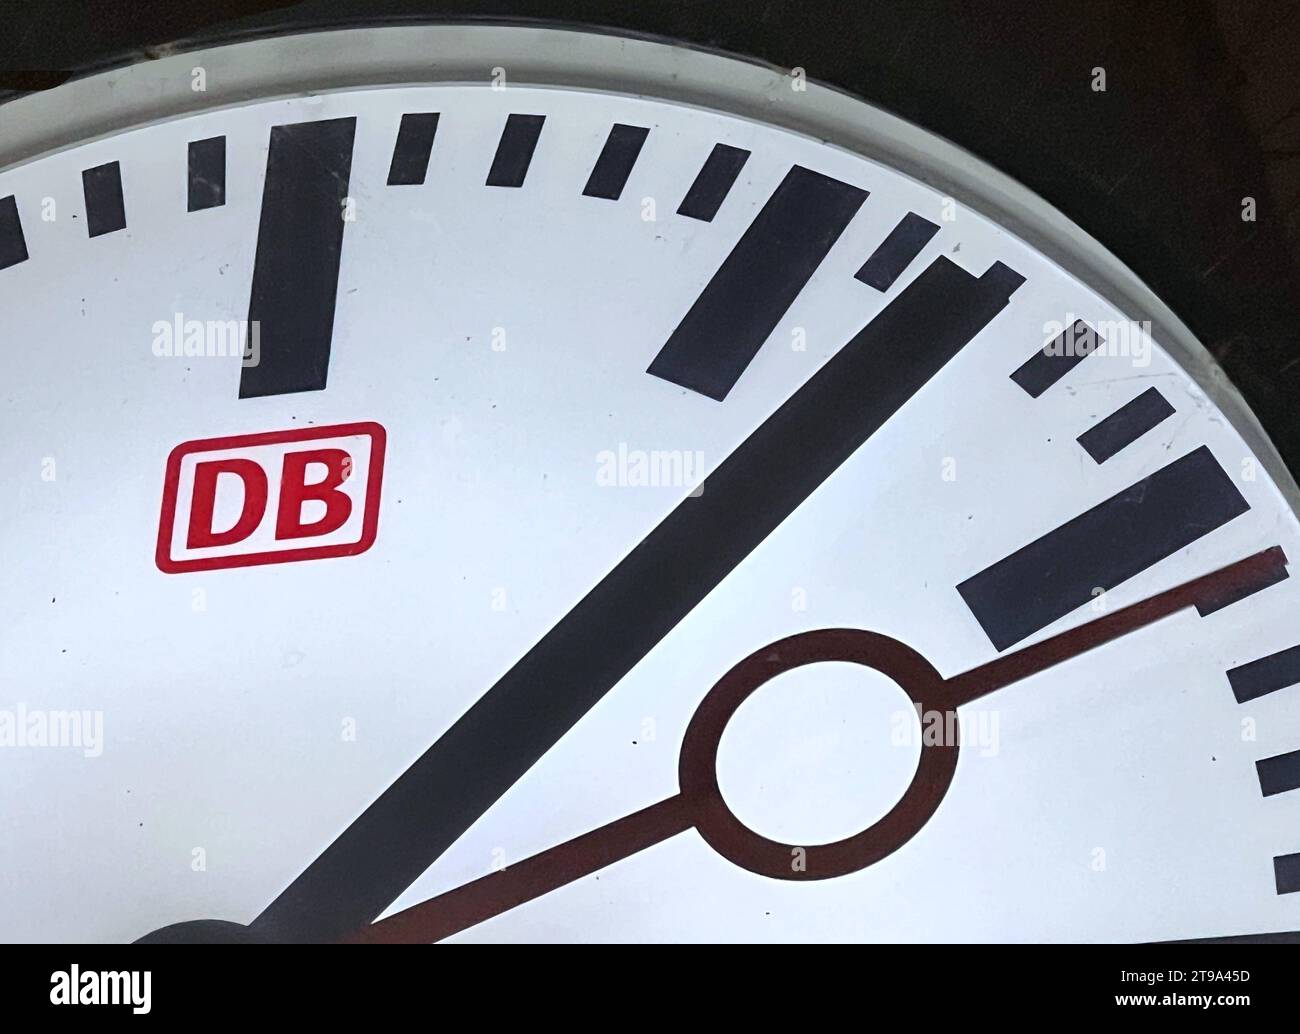 Bahnhofsuhr Uhrzeit Deutsche Bahn Uhrzeiger *** ora della stazione Orologio della Deutsche Bahn mano Copyright: Xmix1x credito: Imago/Alamy Live News Foto Stock